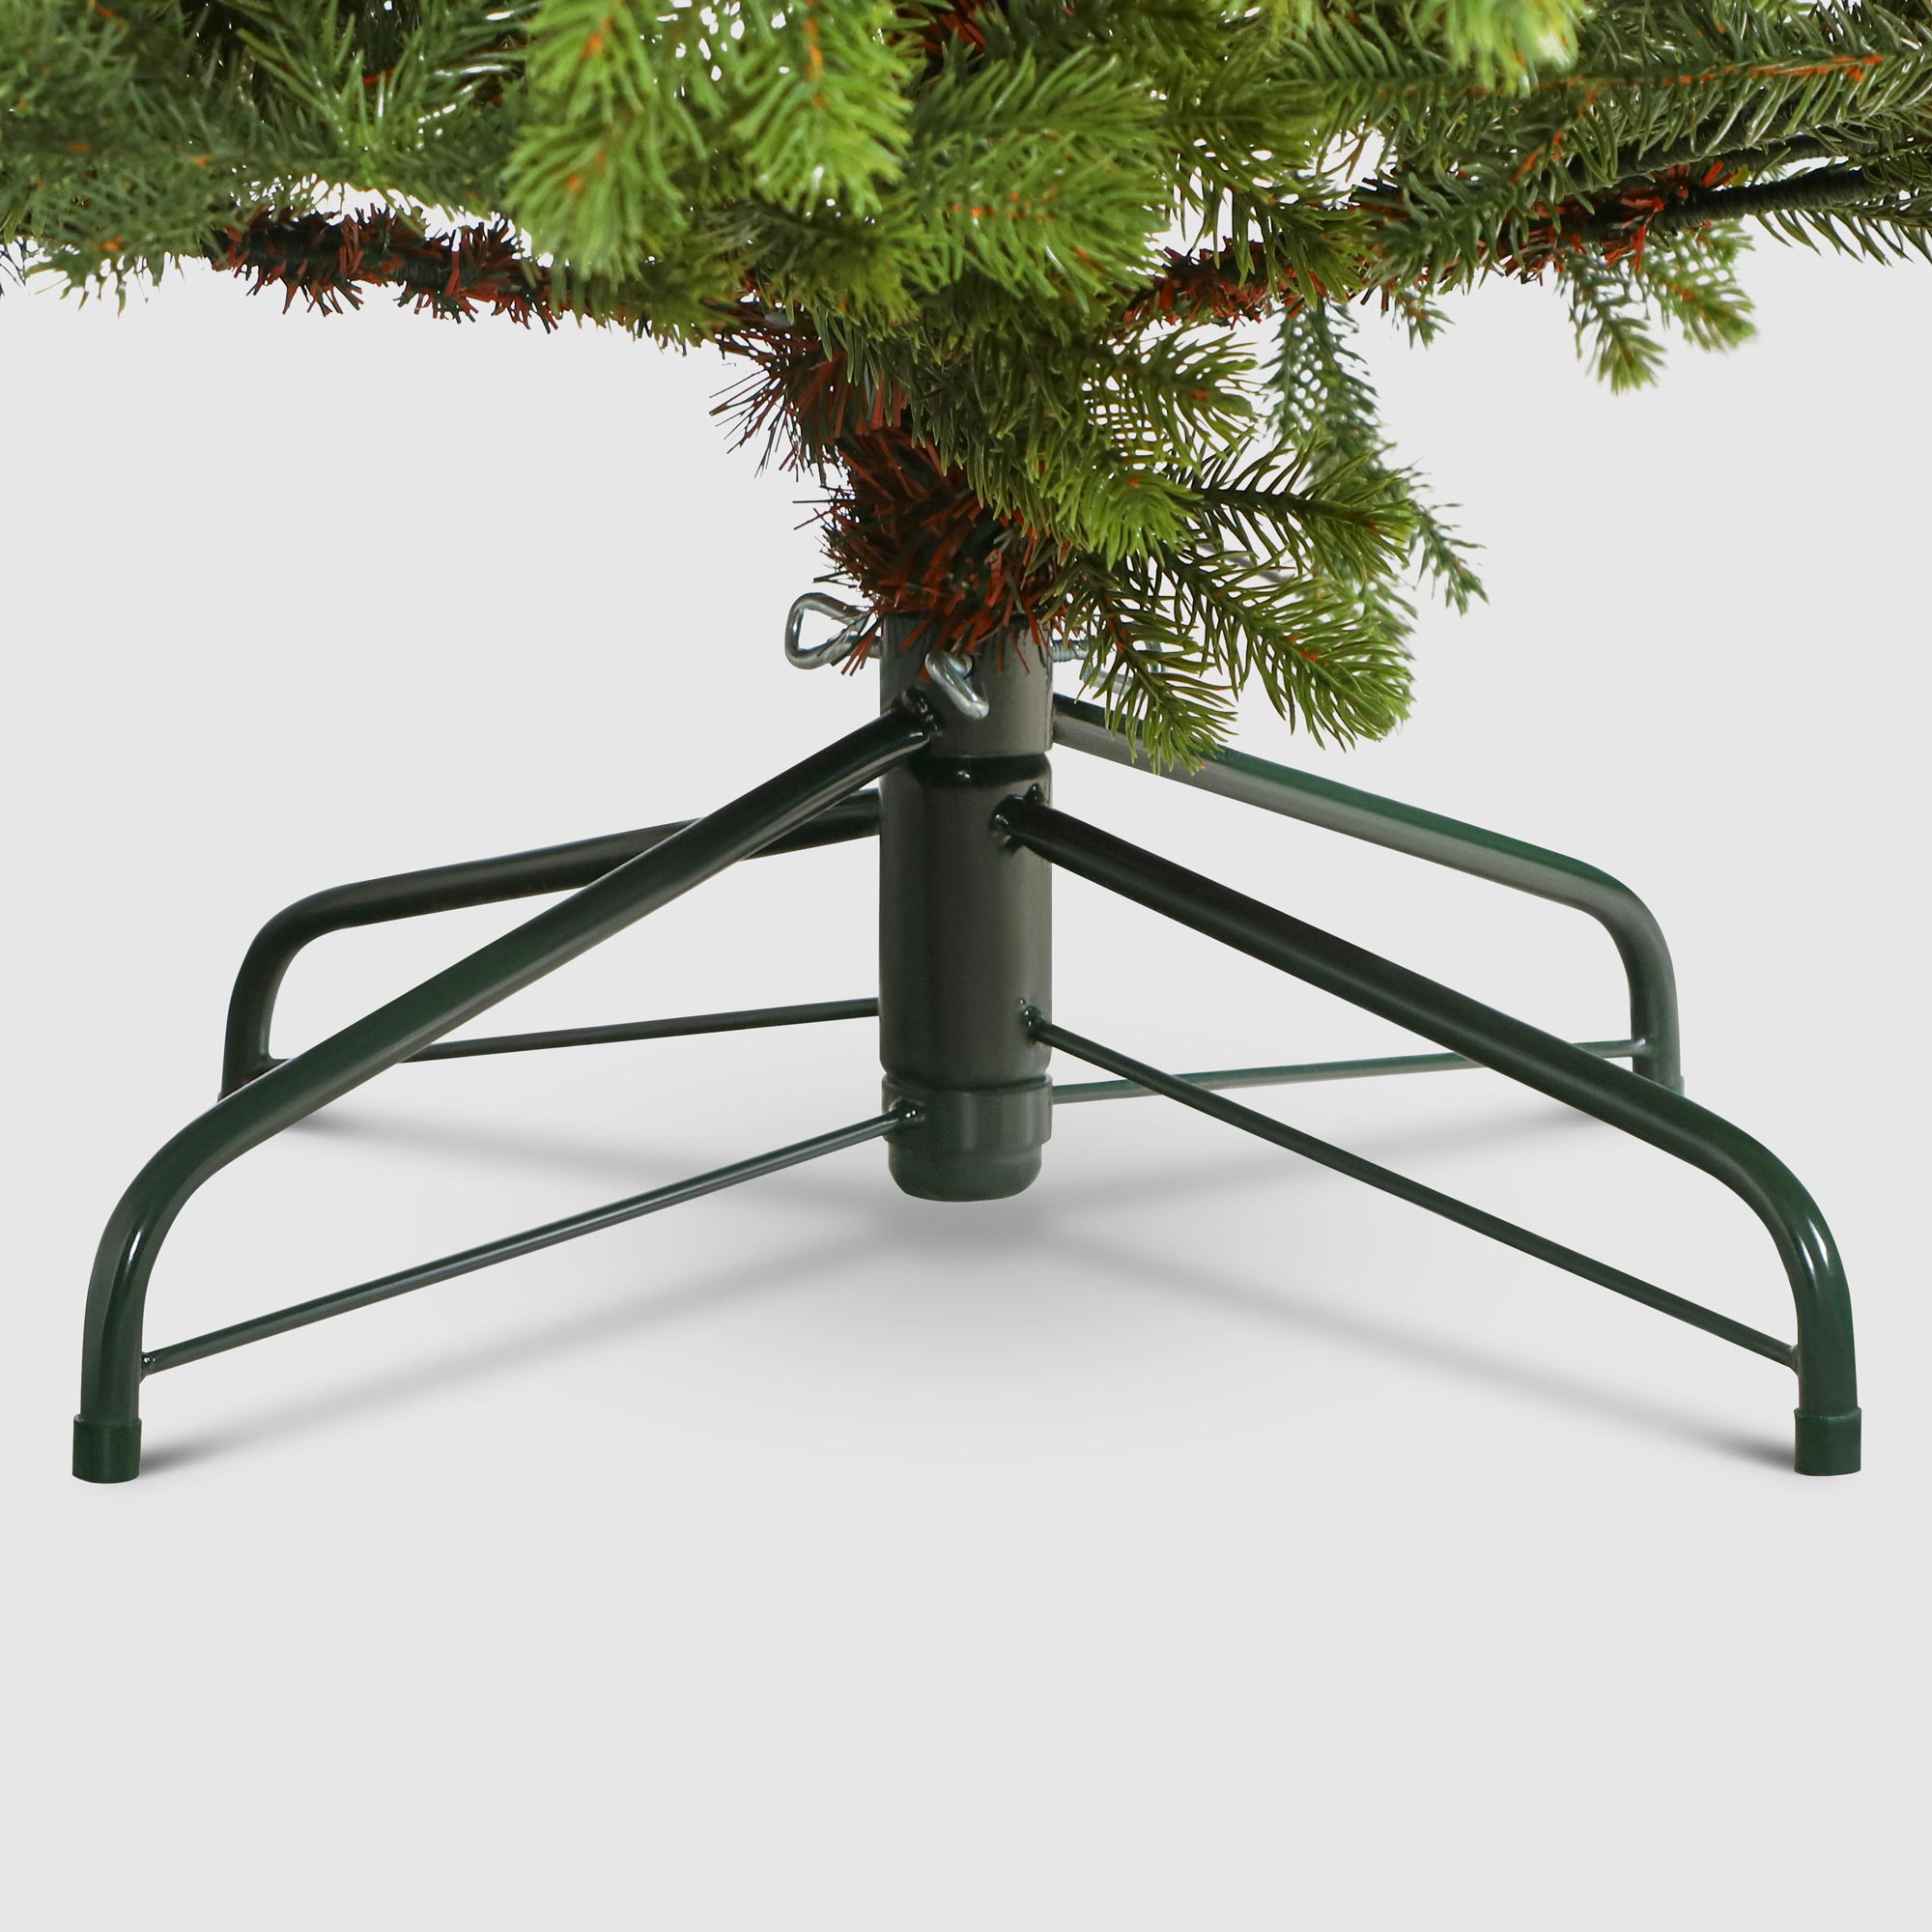 Ель новогодняя Triumph Tree Hackberry exclusive 215 см, цвет зеленый - фото 5